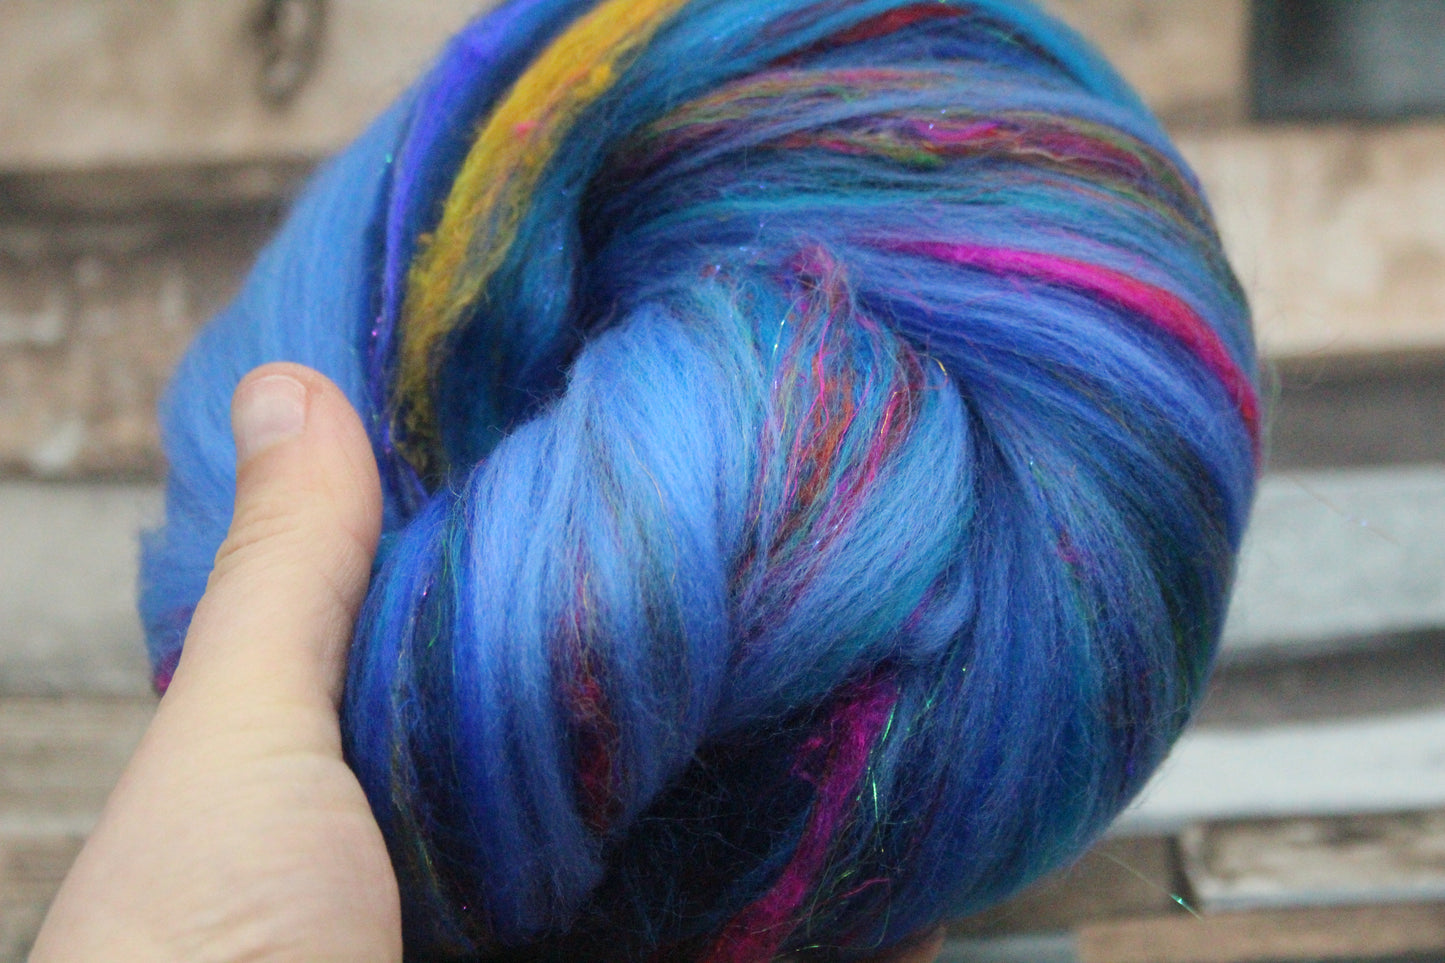 Merino Wool Blend - Blue - 30 grams / 1 oz  - Fibre for felting, weaving or spinning